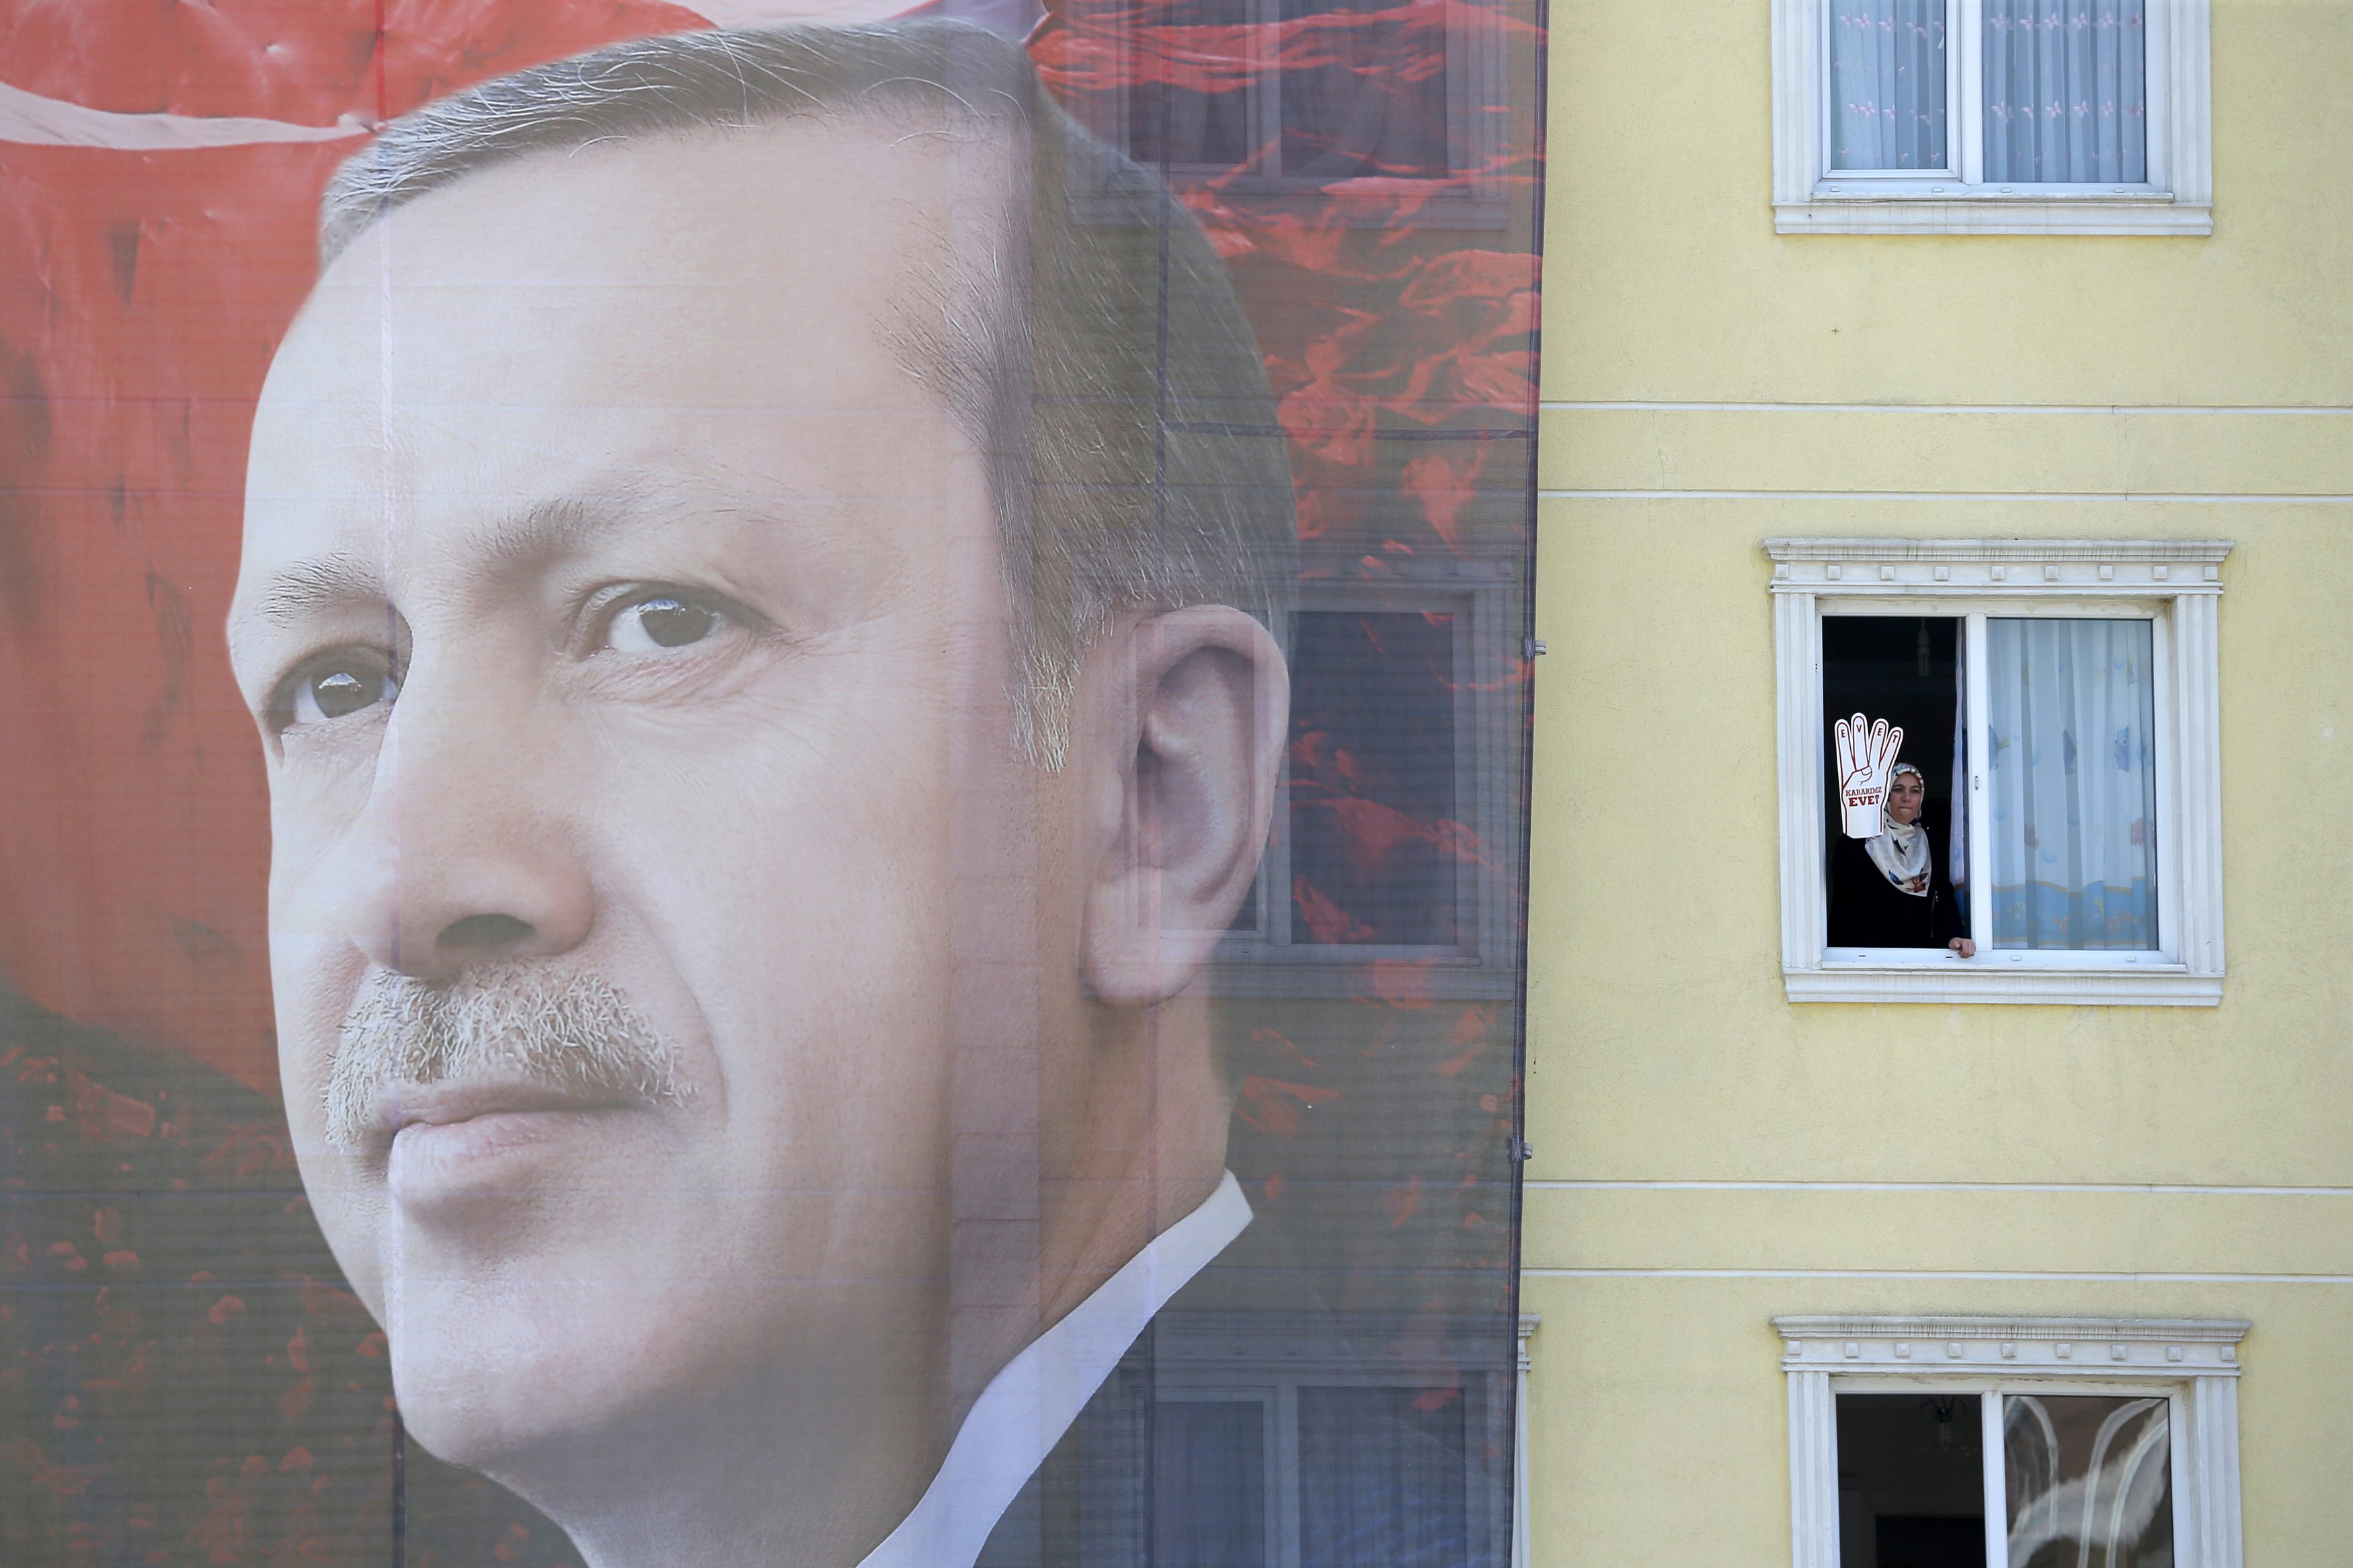 Δημοψήφισμα για «ενός ανδρός αρχή» στην Τουρκία